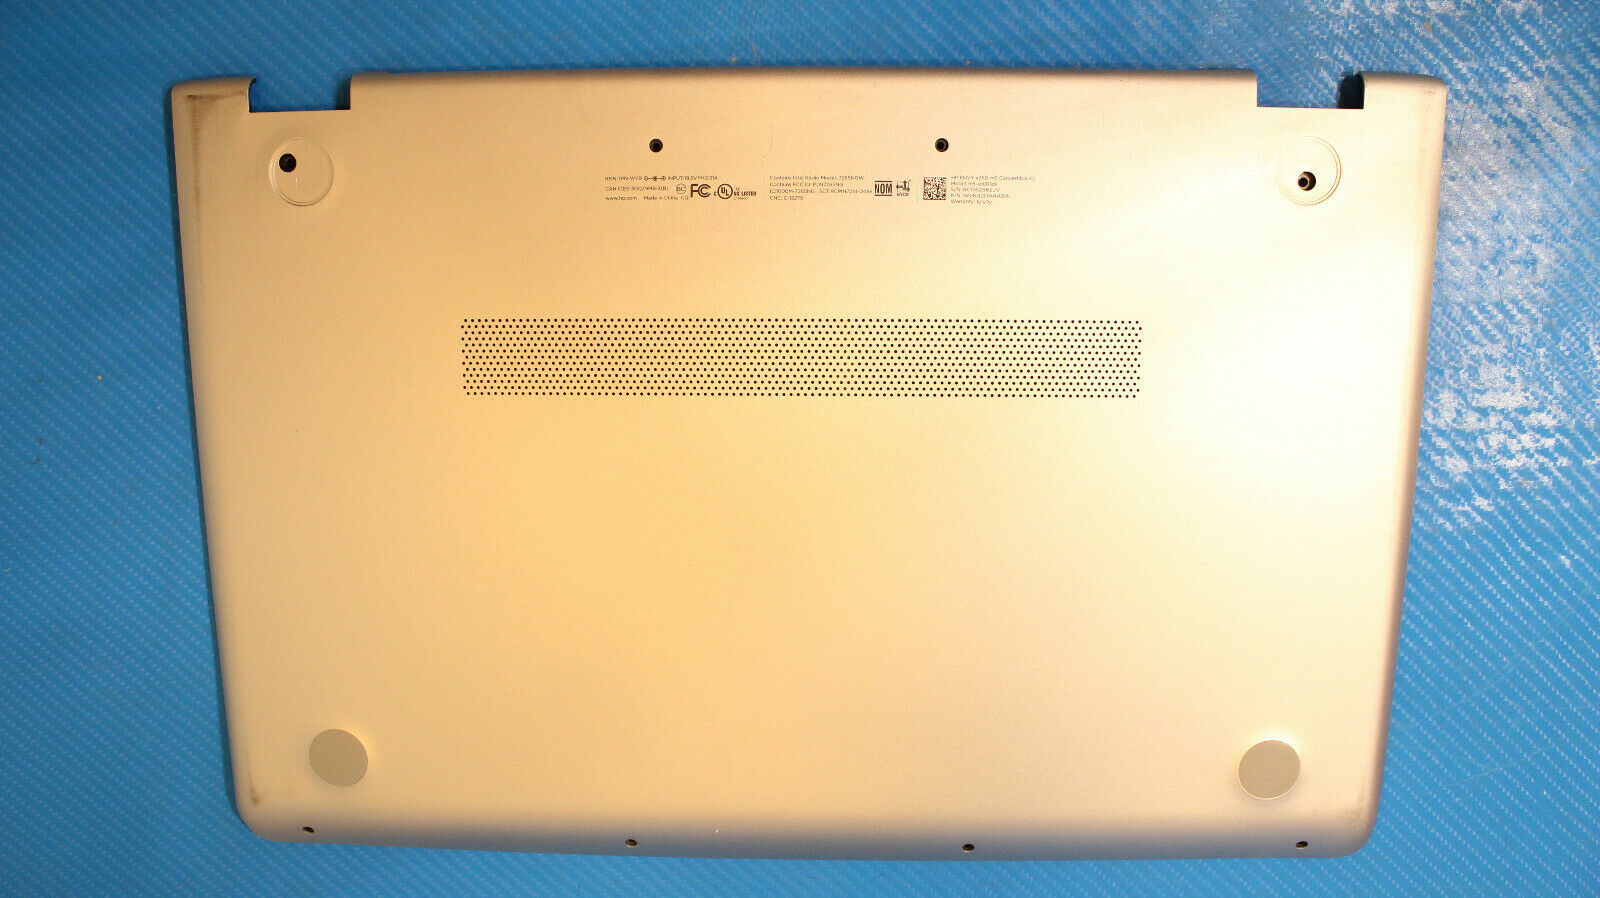 HP ENVY x360 m6-aq003dx 15.6